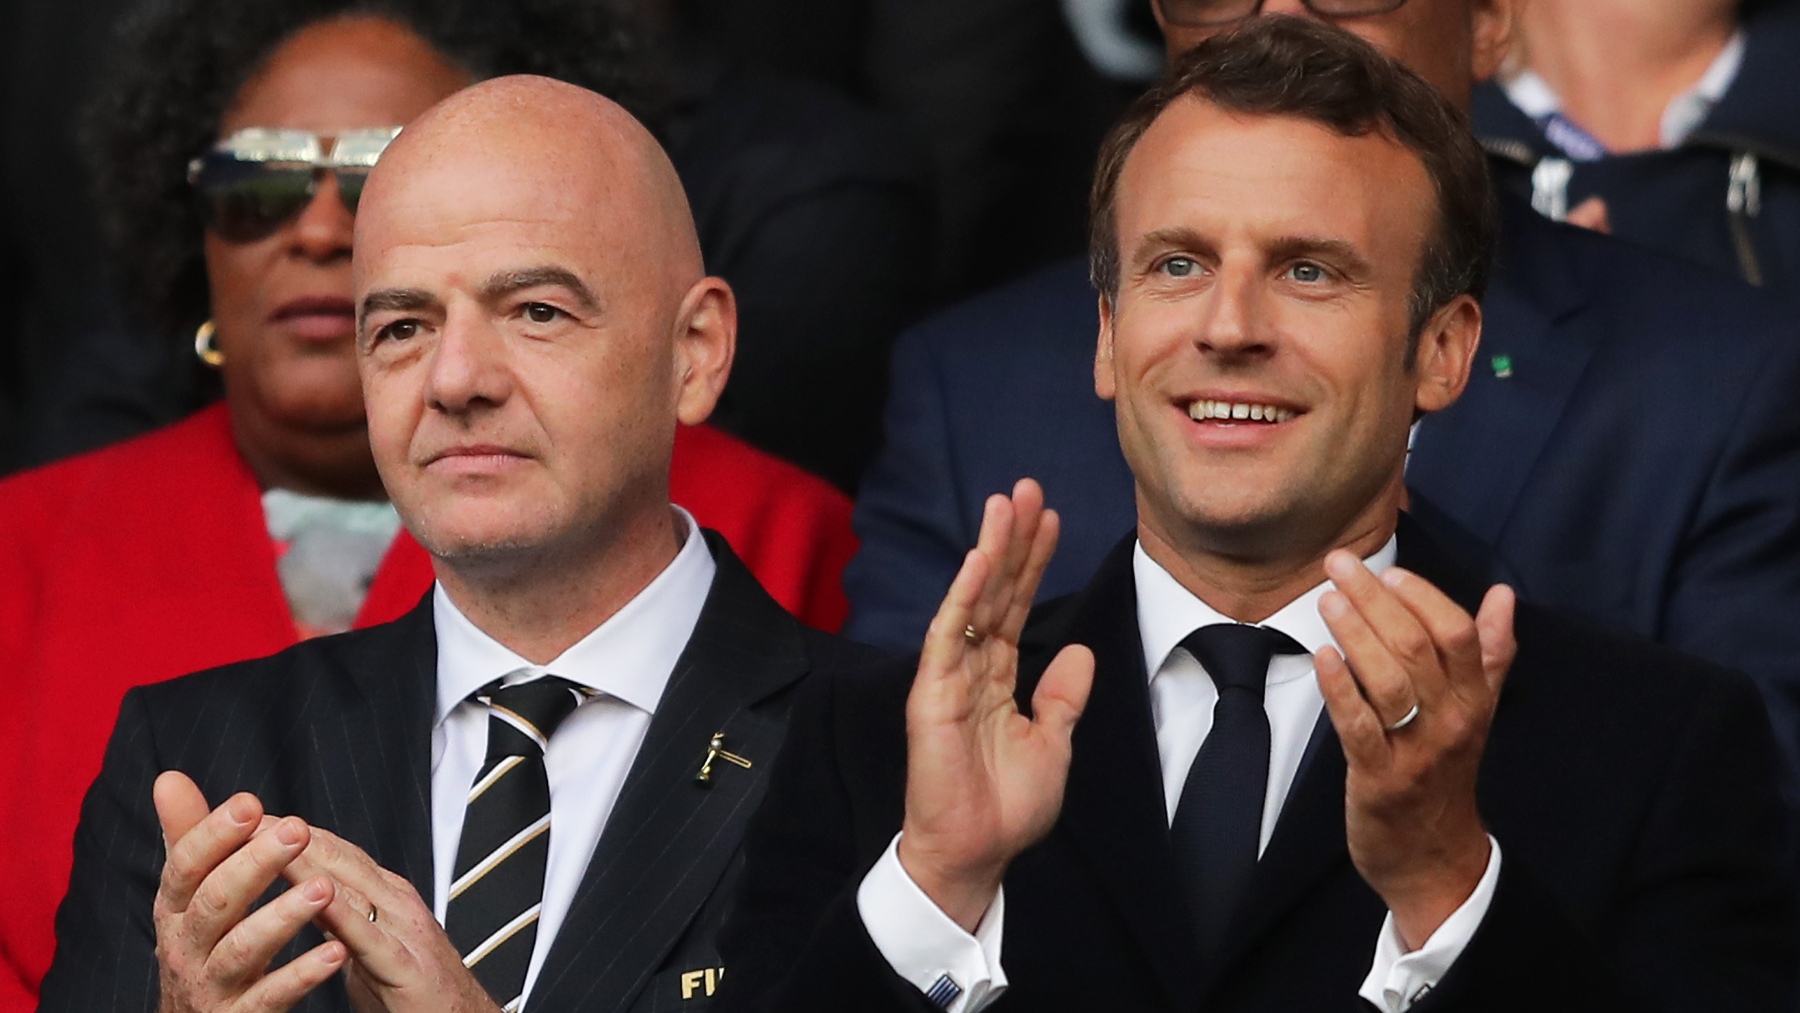 La France signe des accords avec le Qatar et boycotte la Coupe du monde dans ses grandes villes